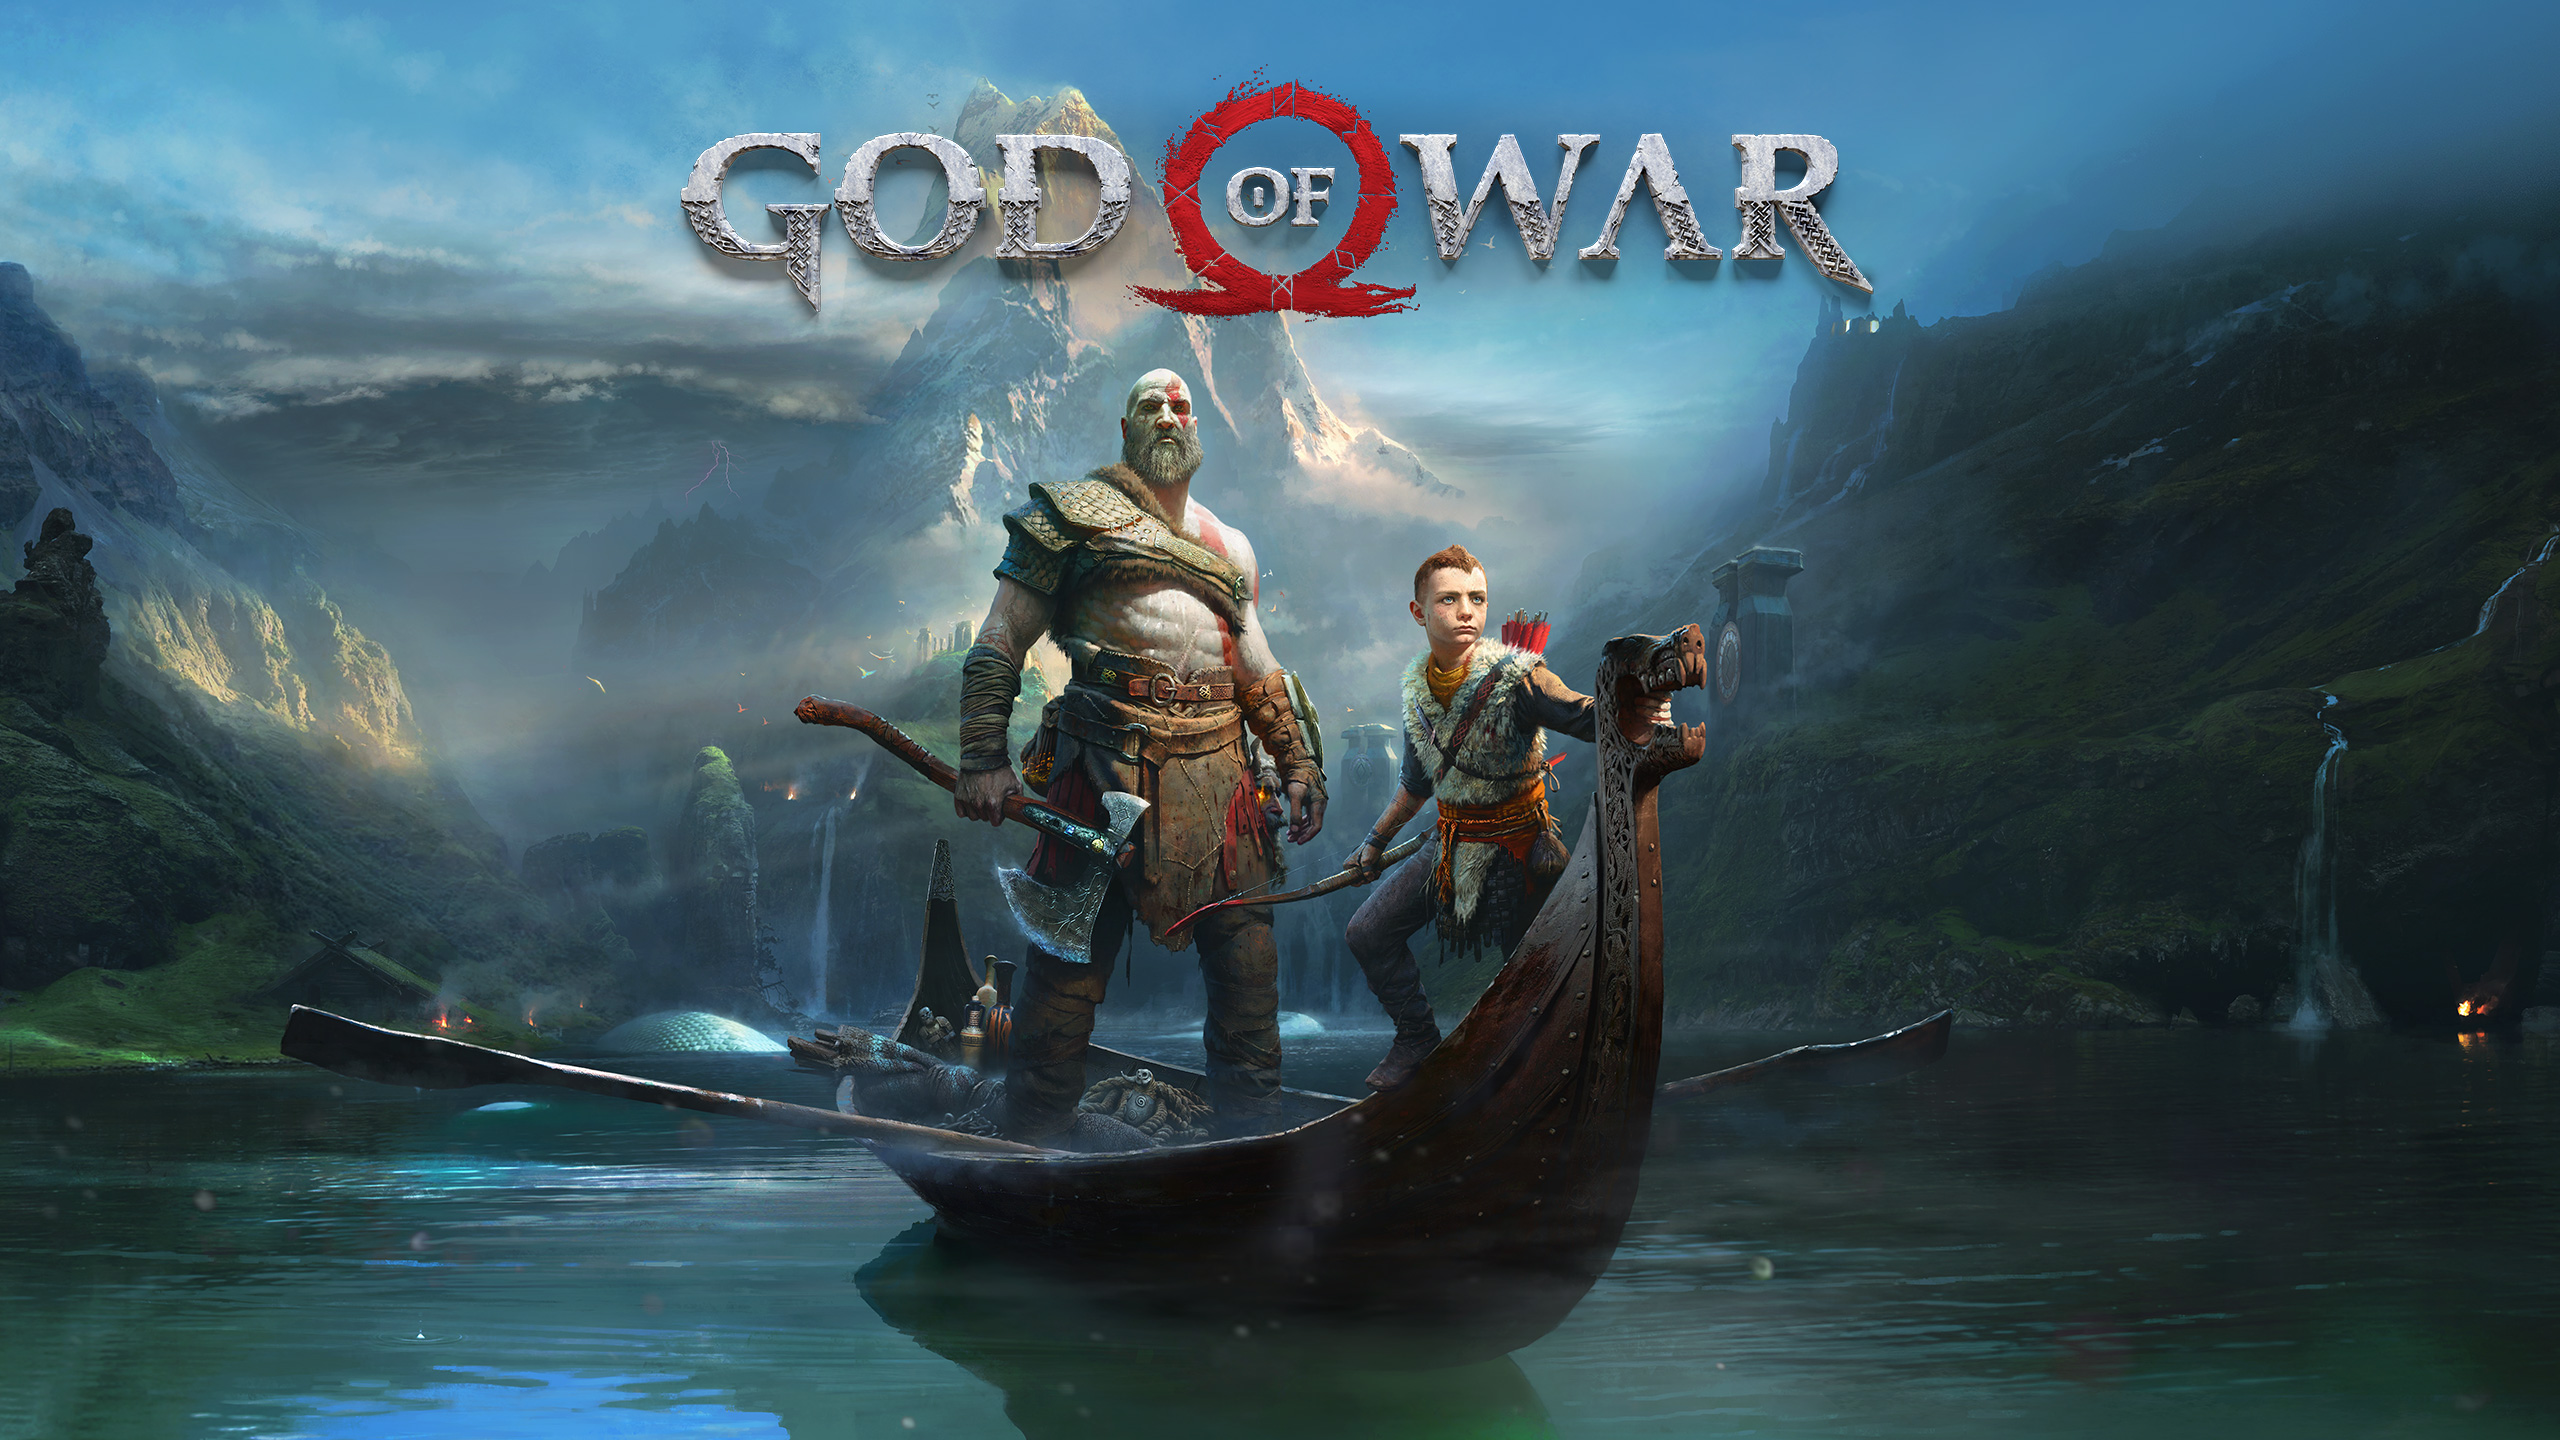 God of War оффлайн активация+Все DLC+ОБНОВЛЕНИЯ 🌎GLOBAL/PC/Steam